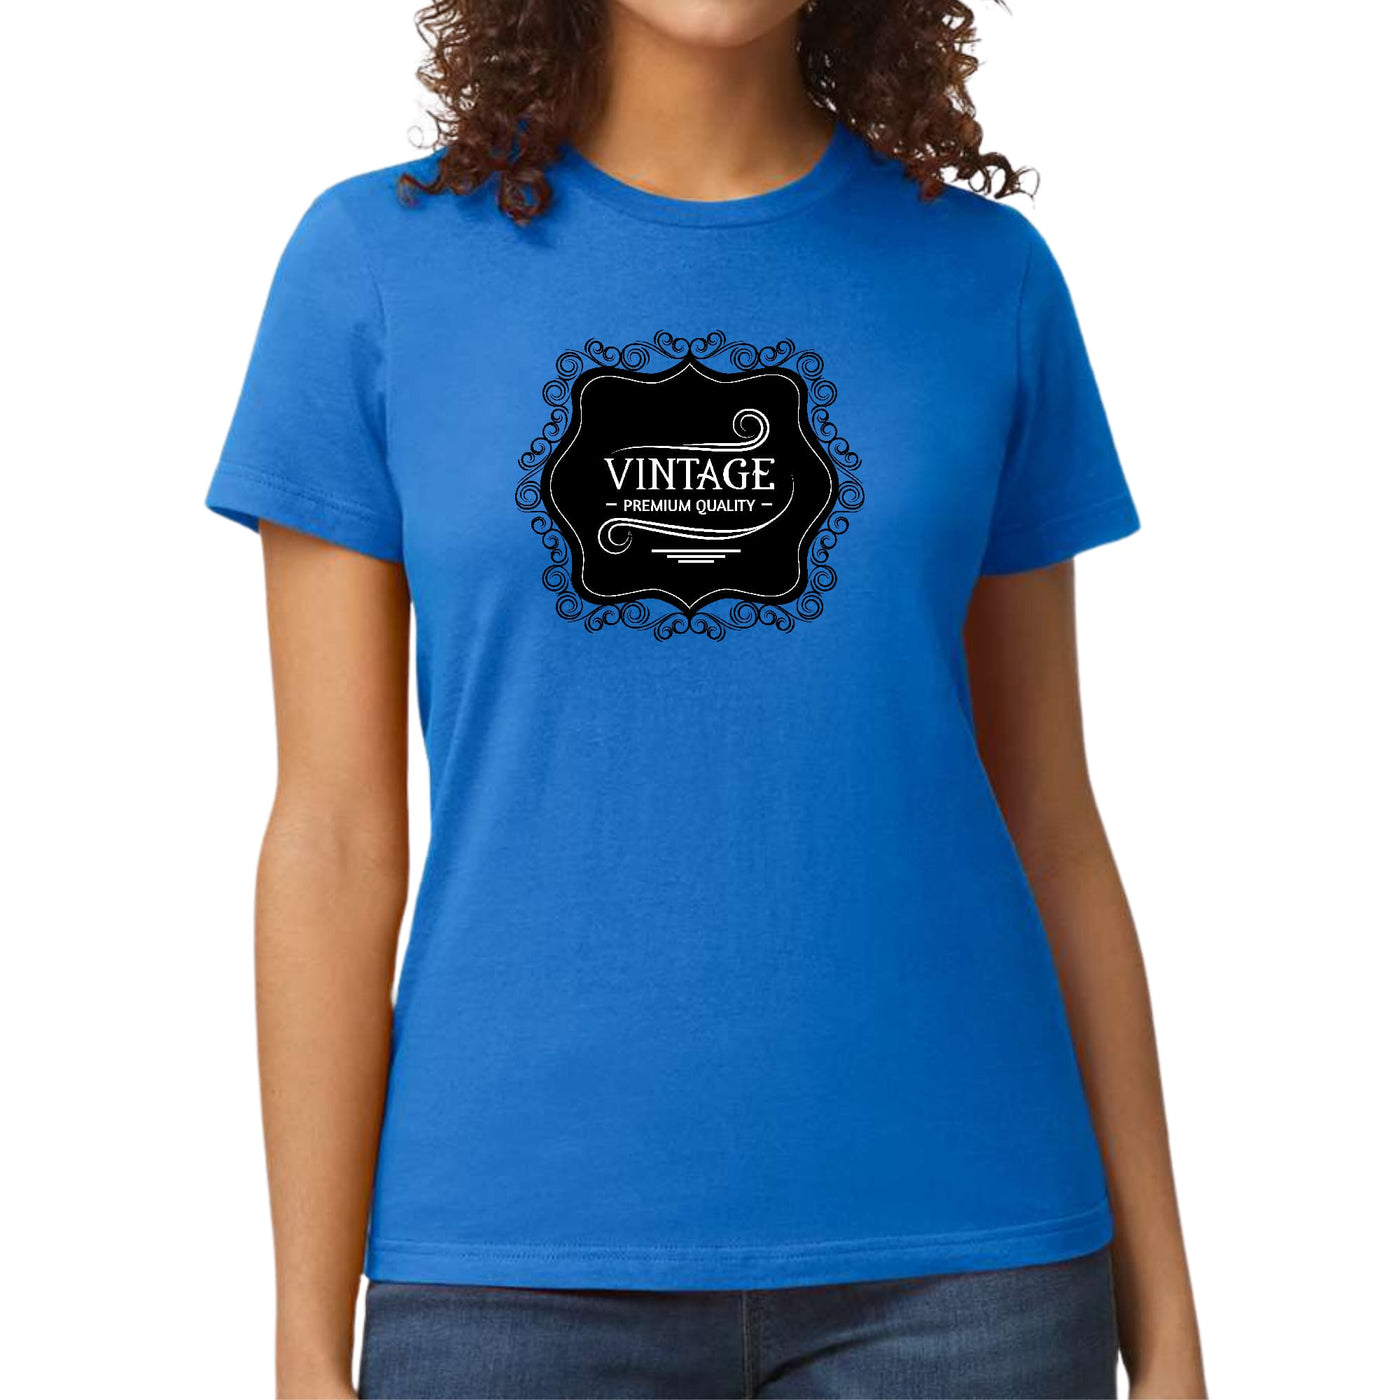 Womens Graphic T - shirt Vintage Premium Quality Black White - T - Shirts